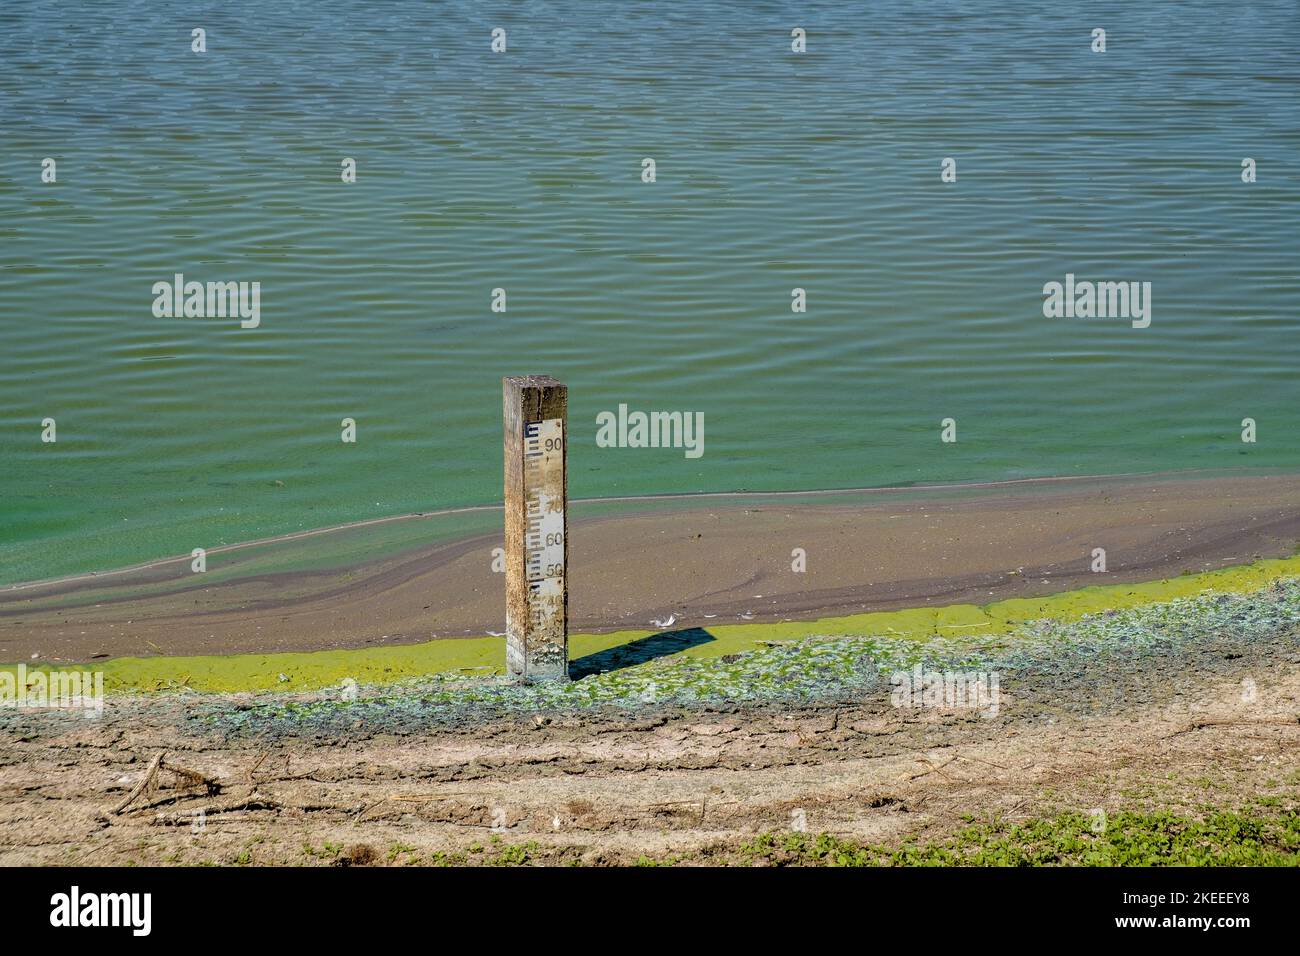 Al Parc du Marquenterre santuario degli uccelli, Baie de Somme, Francia, durante la siccità estiva del 2022, il livello dell'acqua è al di sotto del minimo. Foto Stock